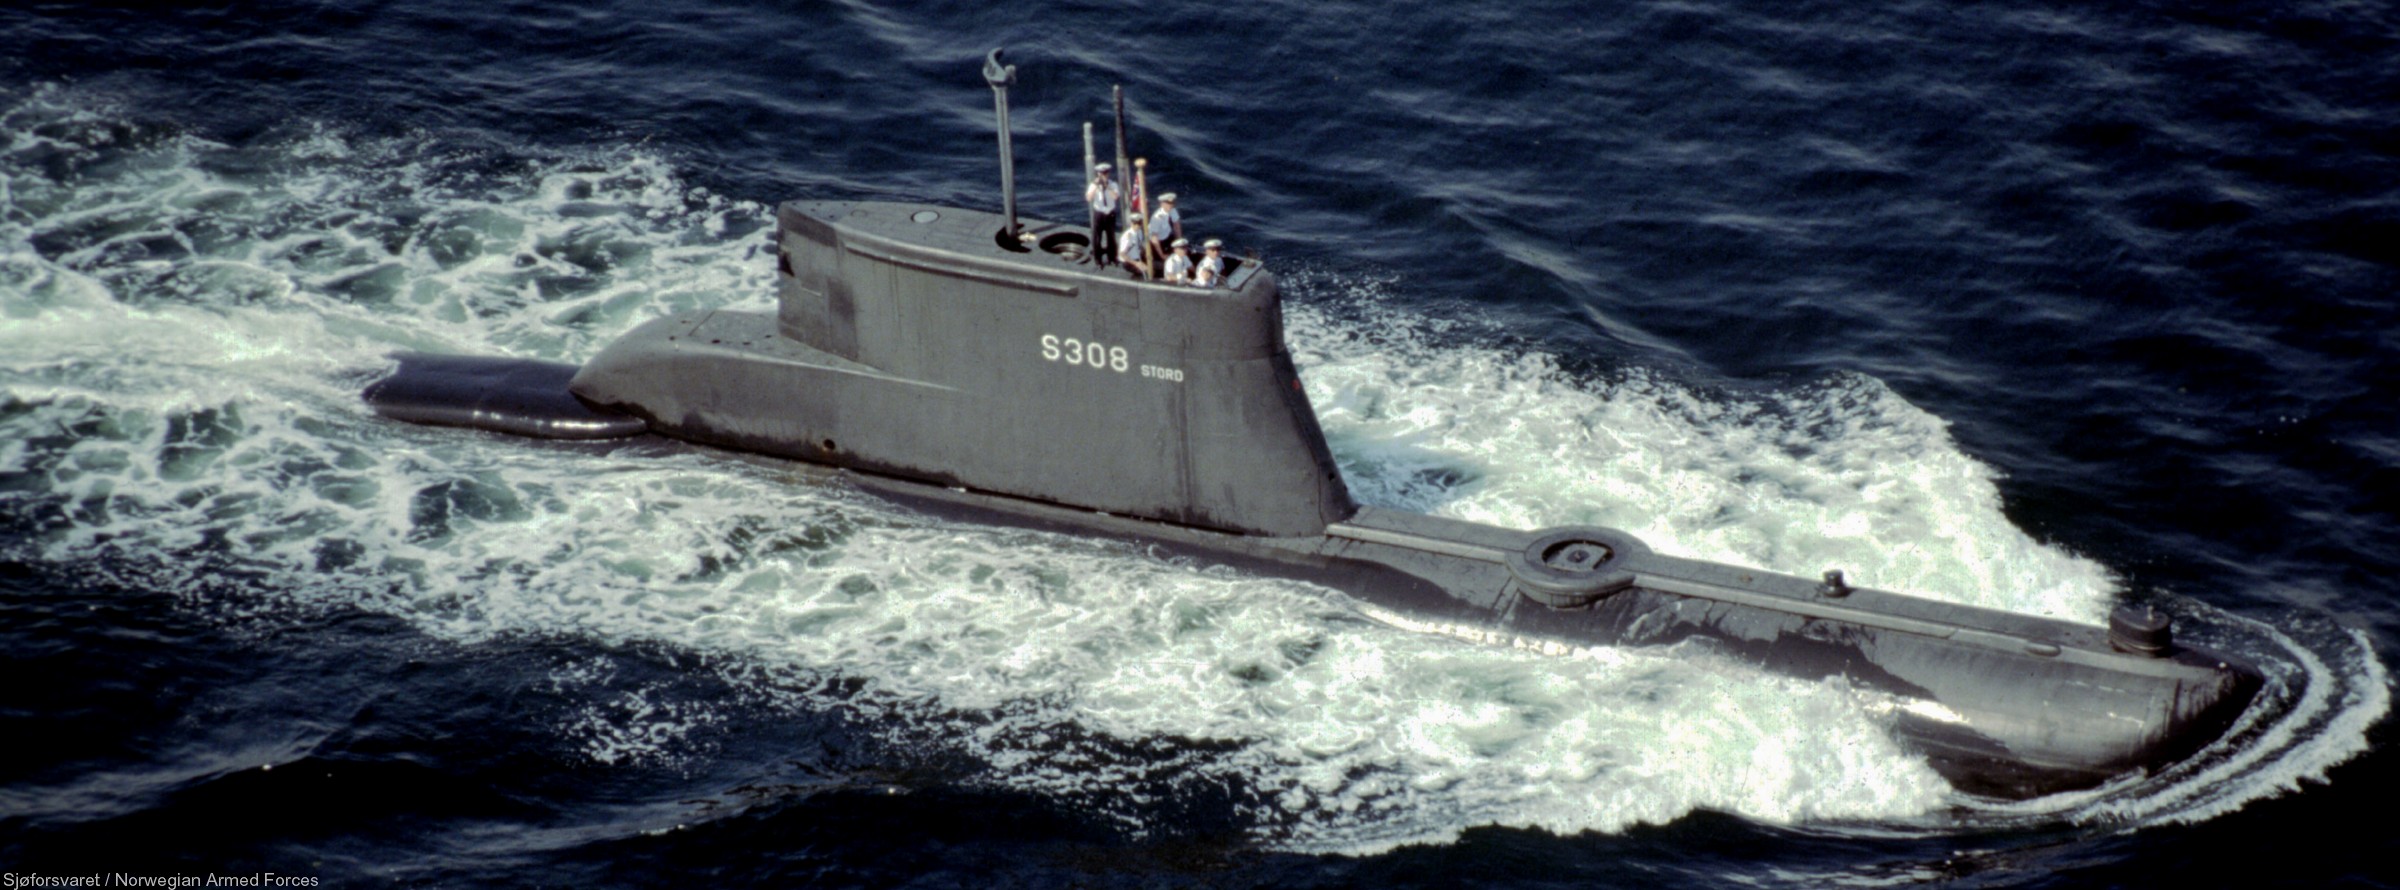 kobben class type 207 submarine royal norwegian navy sjøforsvaret knm hnoms s308 stord 02